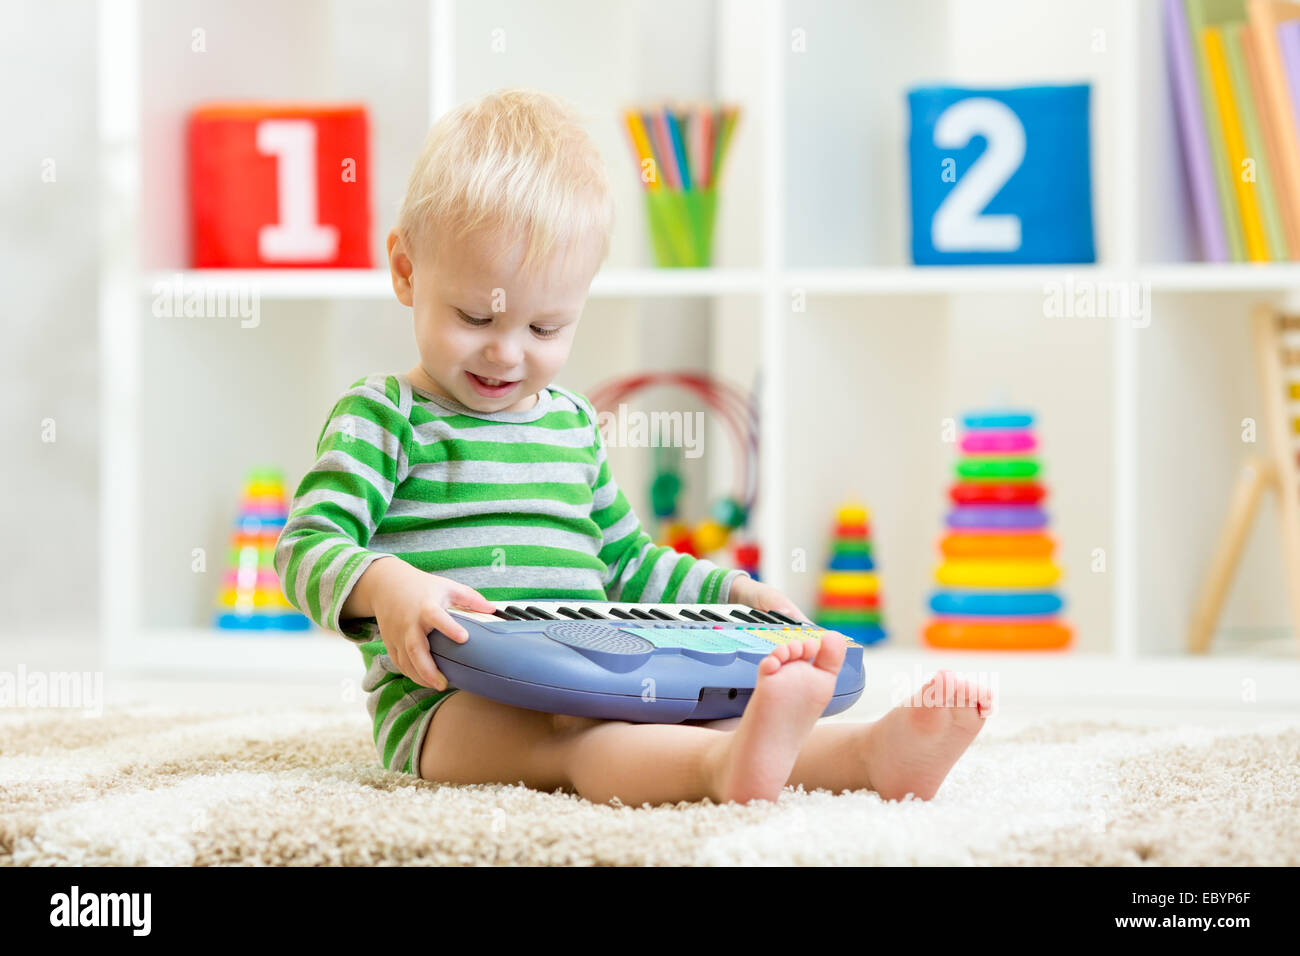 Glückliches Kind Kleinkind Jungen Spaß spielen Klavier Spielzeug sitzen am Boden im Kinderzimmer Stockfoto